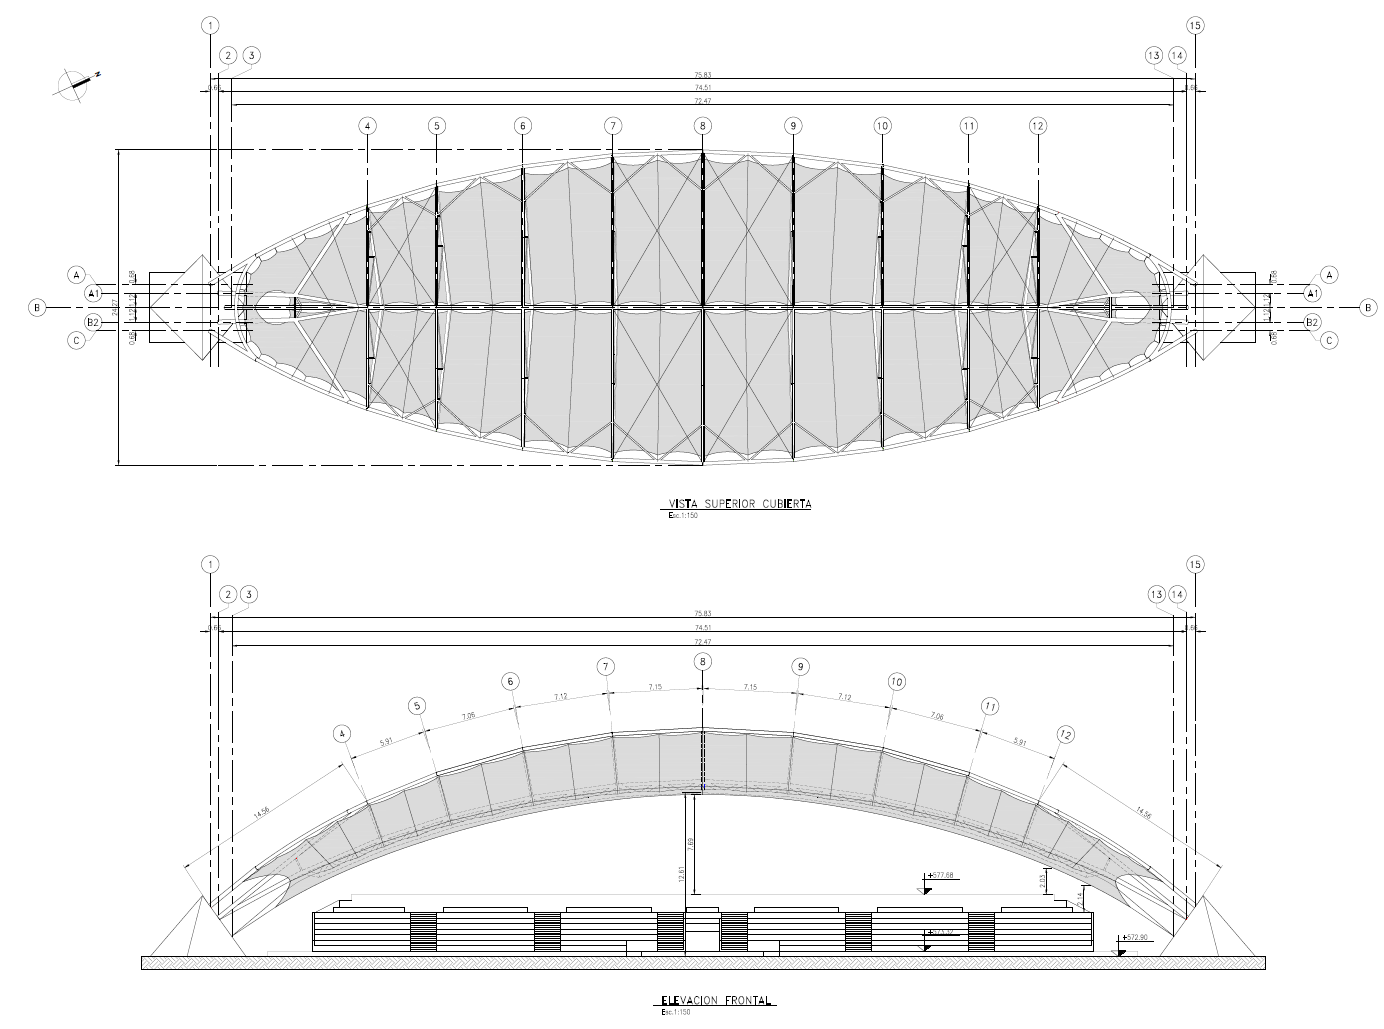 Zeichnungsausschnitt mit Draufsicht (oben) und Schnitt durch das Dach (unten, © FHS Ingeniería Estructural Ltda.)